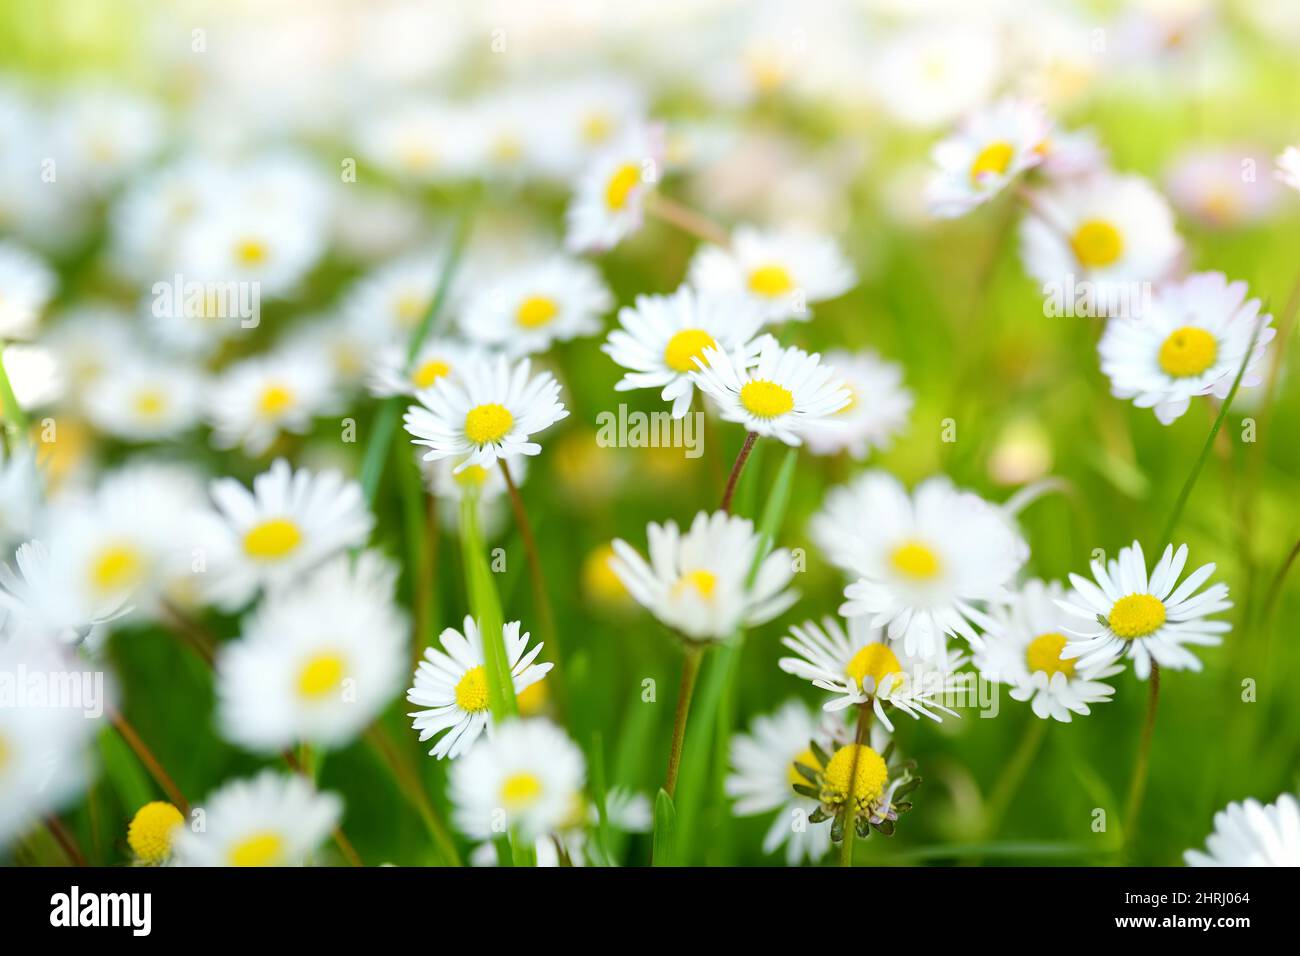 Bel prato in primavera pieno di fioritura bianca comune margherite su erba verde. Prato con margherite. Bellis perennis. Foto Stock